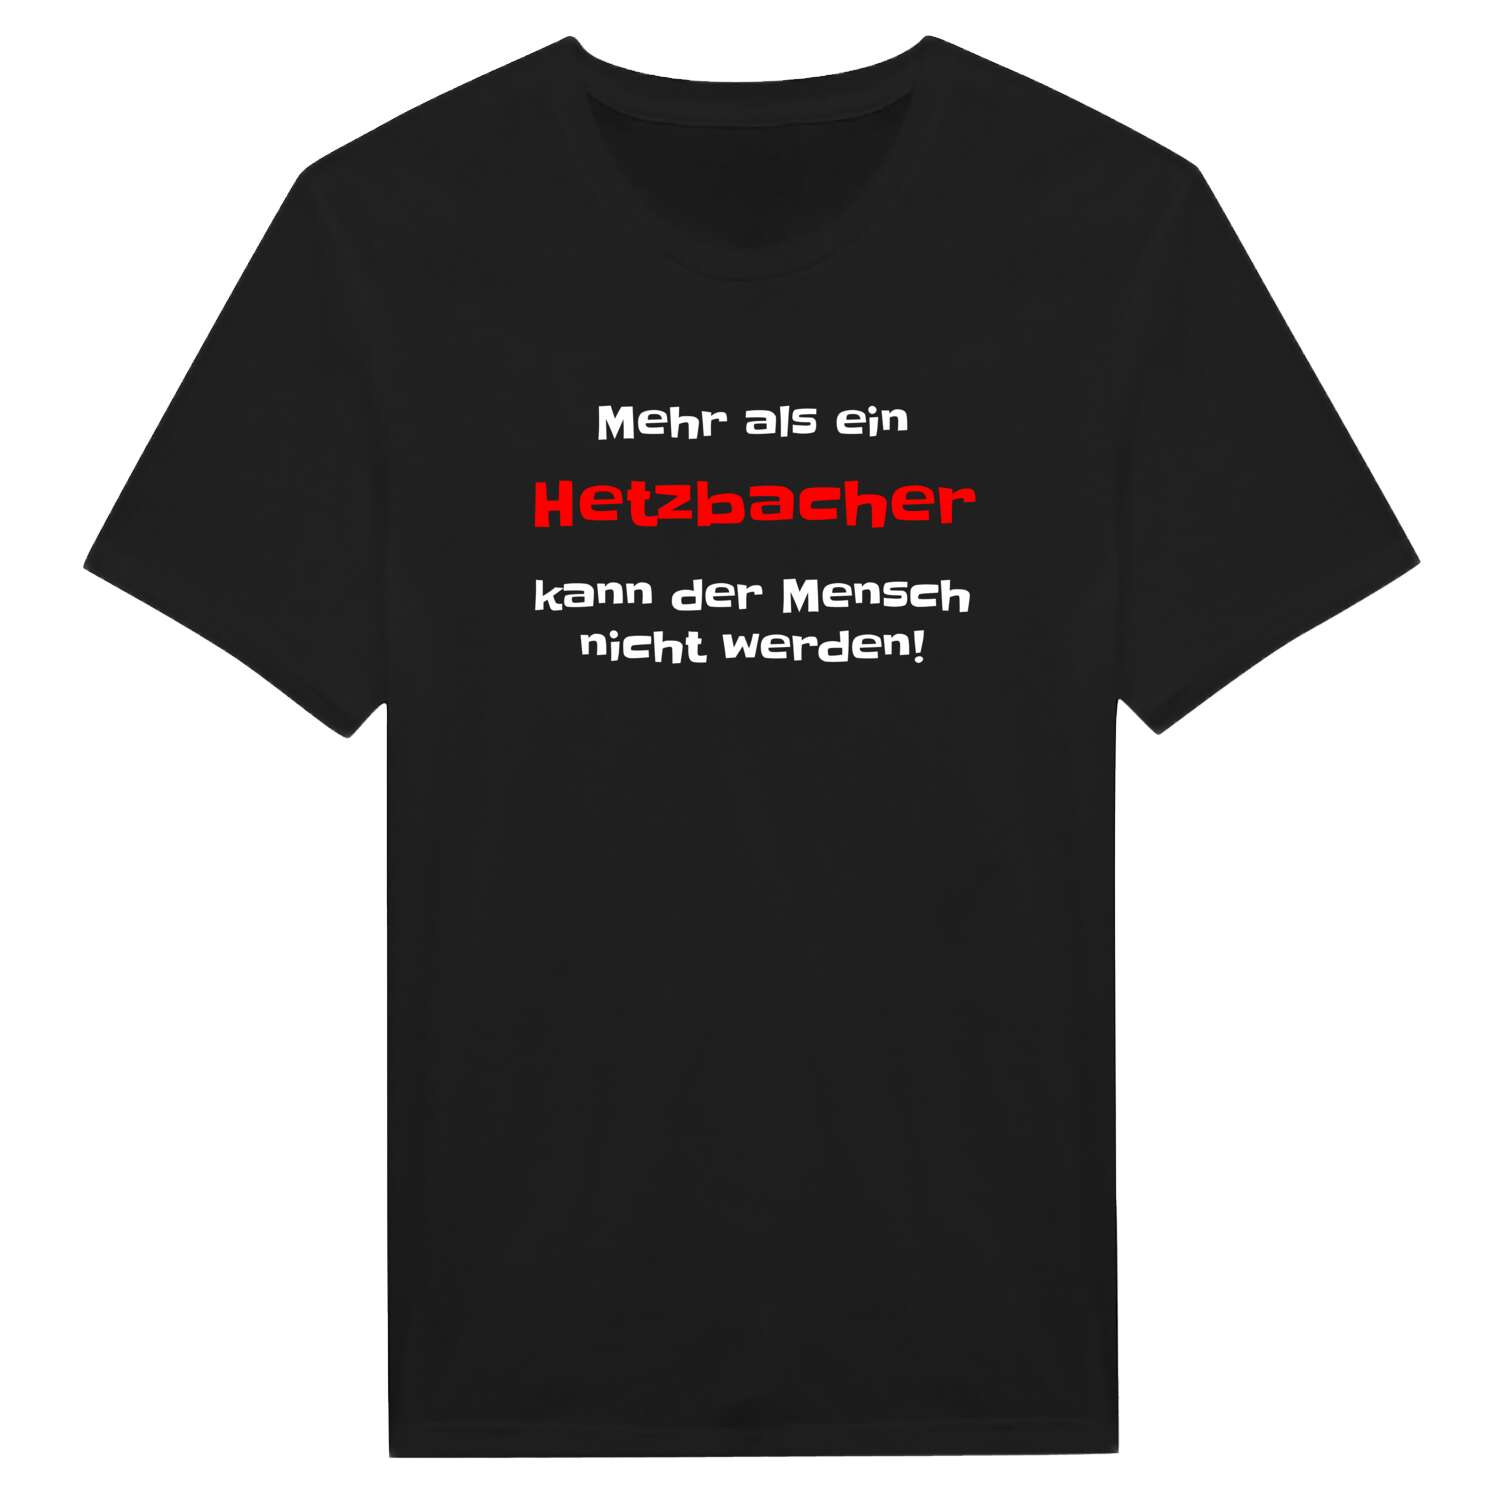 Hetzbach T-Shirt »Mehr als ein«